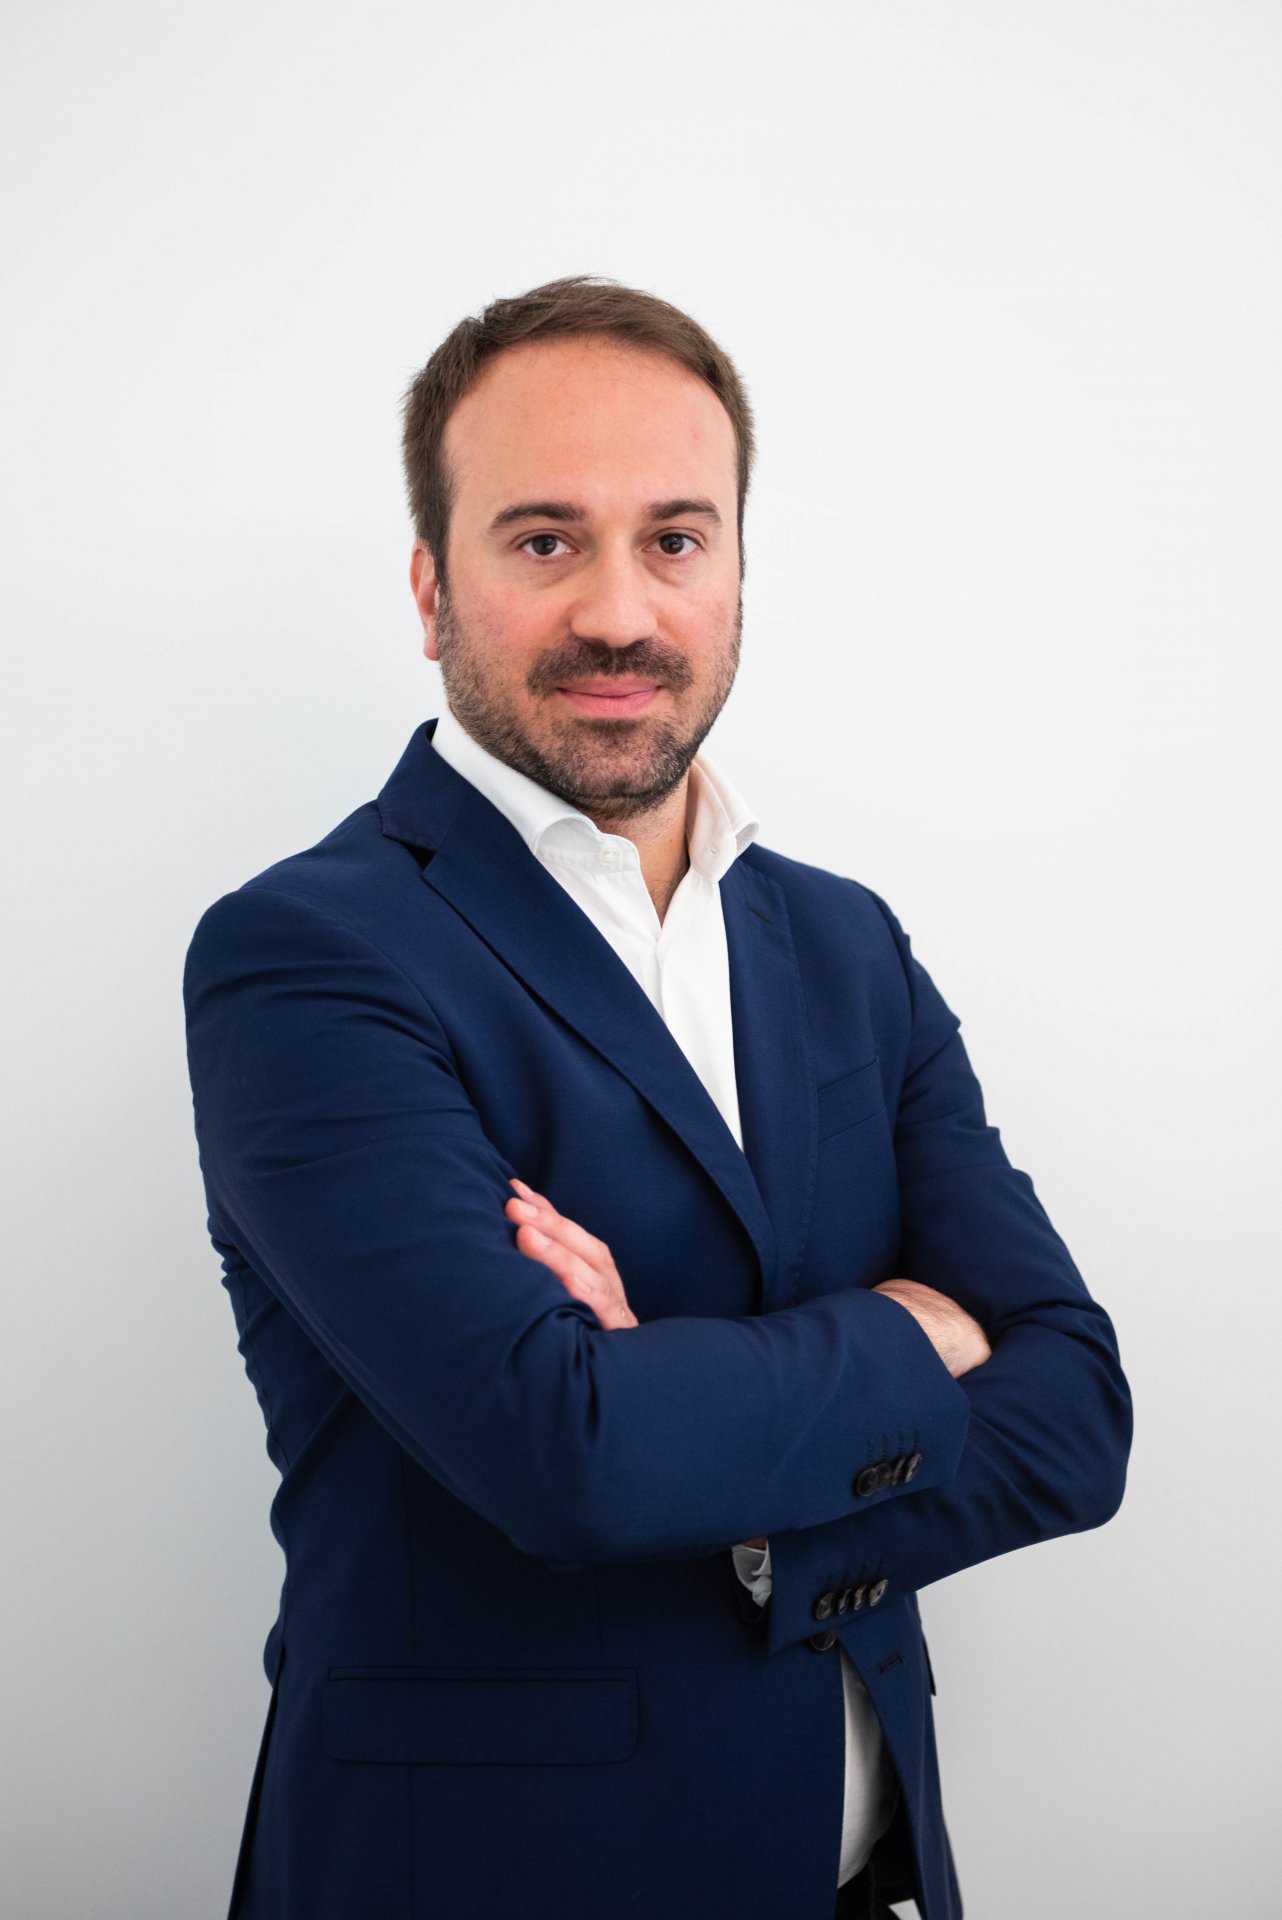 Andrea Incondi Managing Director FlixBus Italia